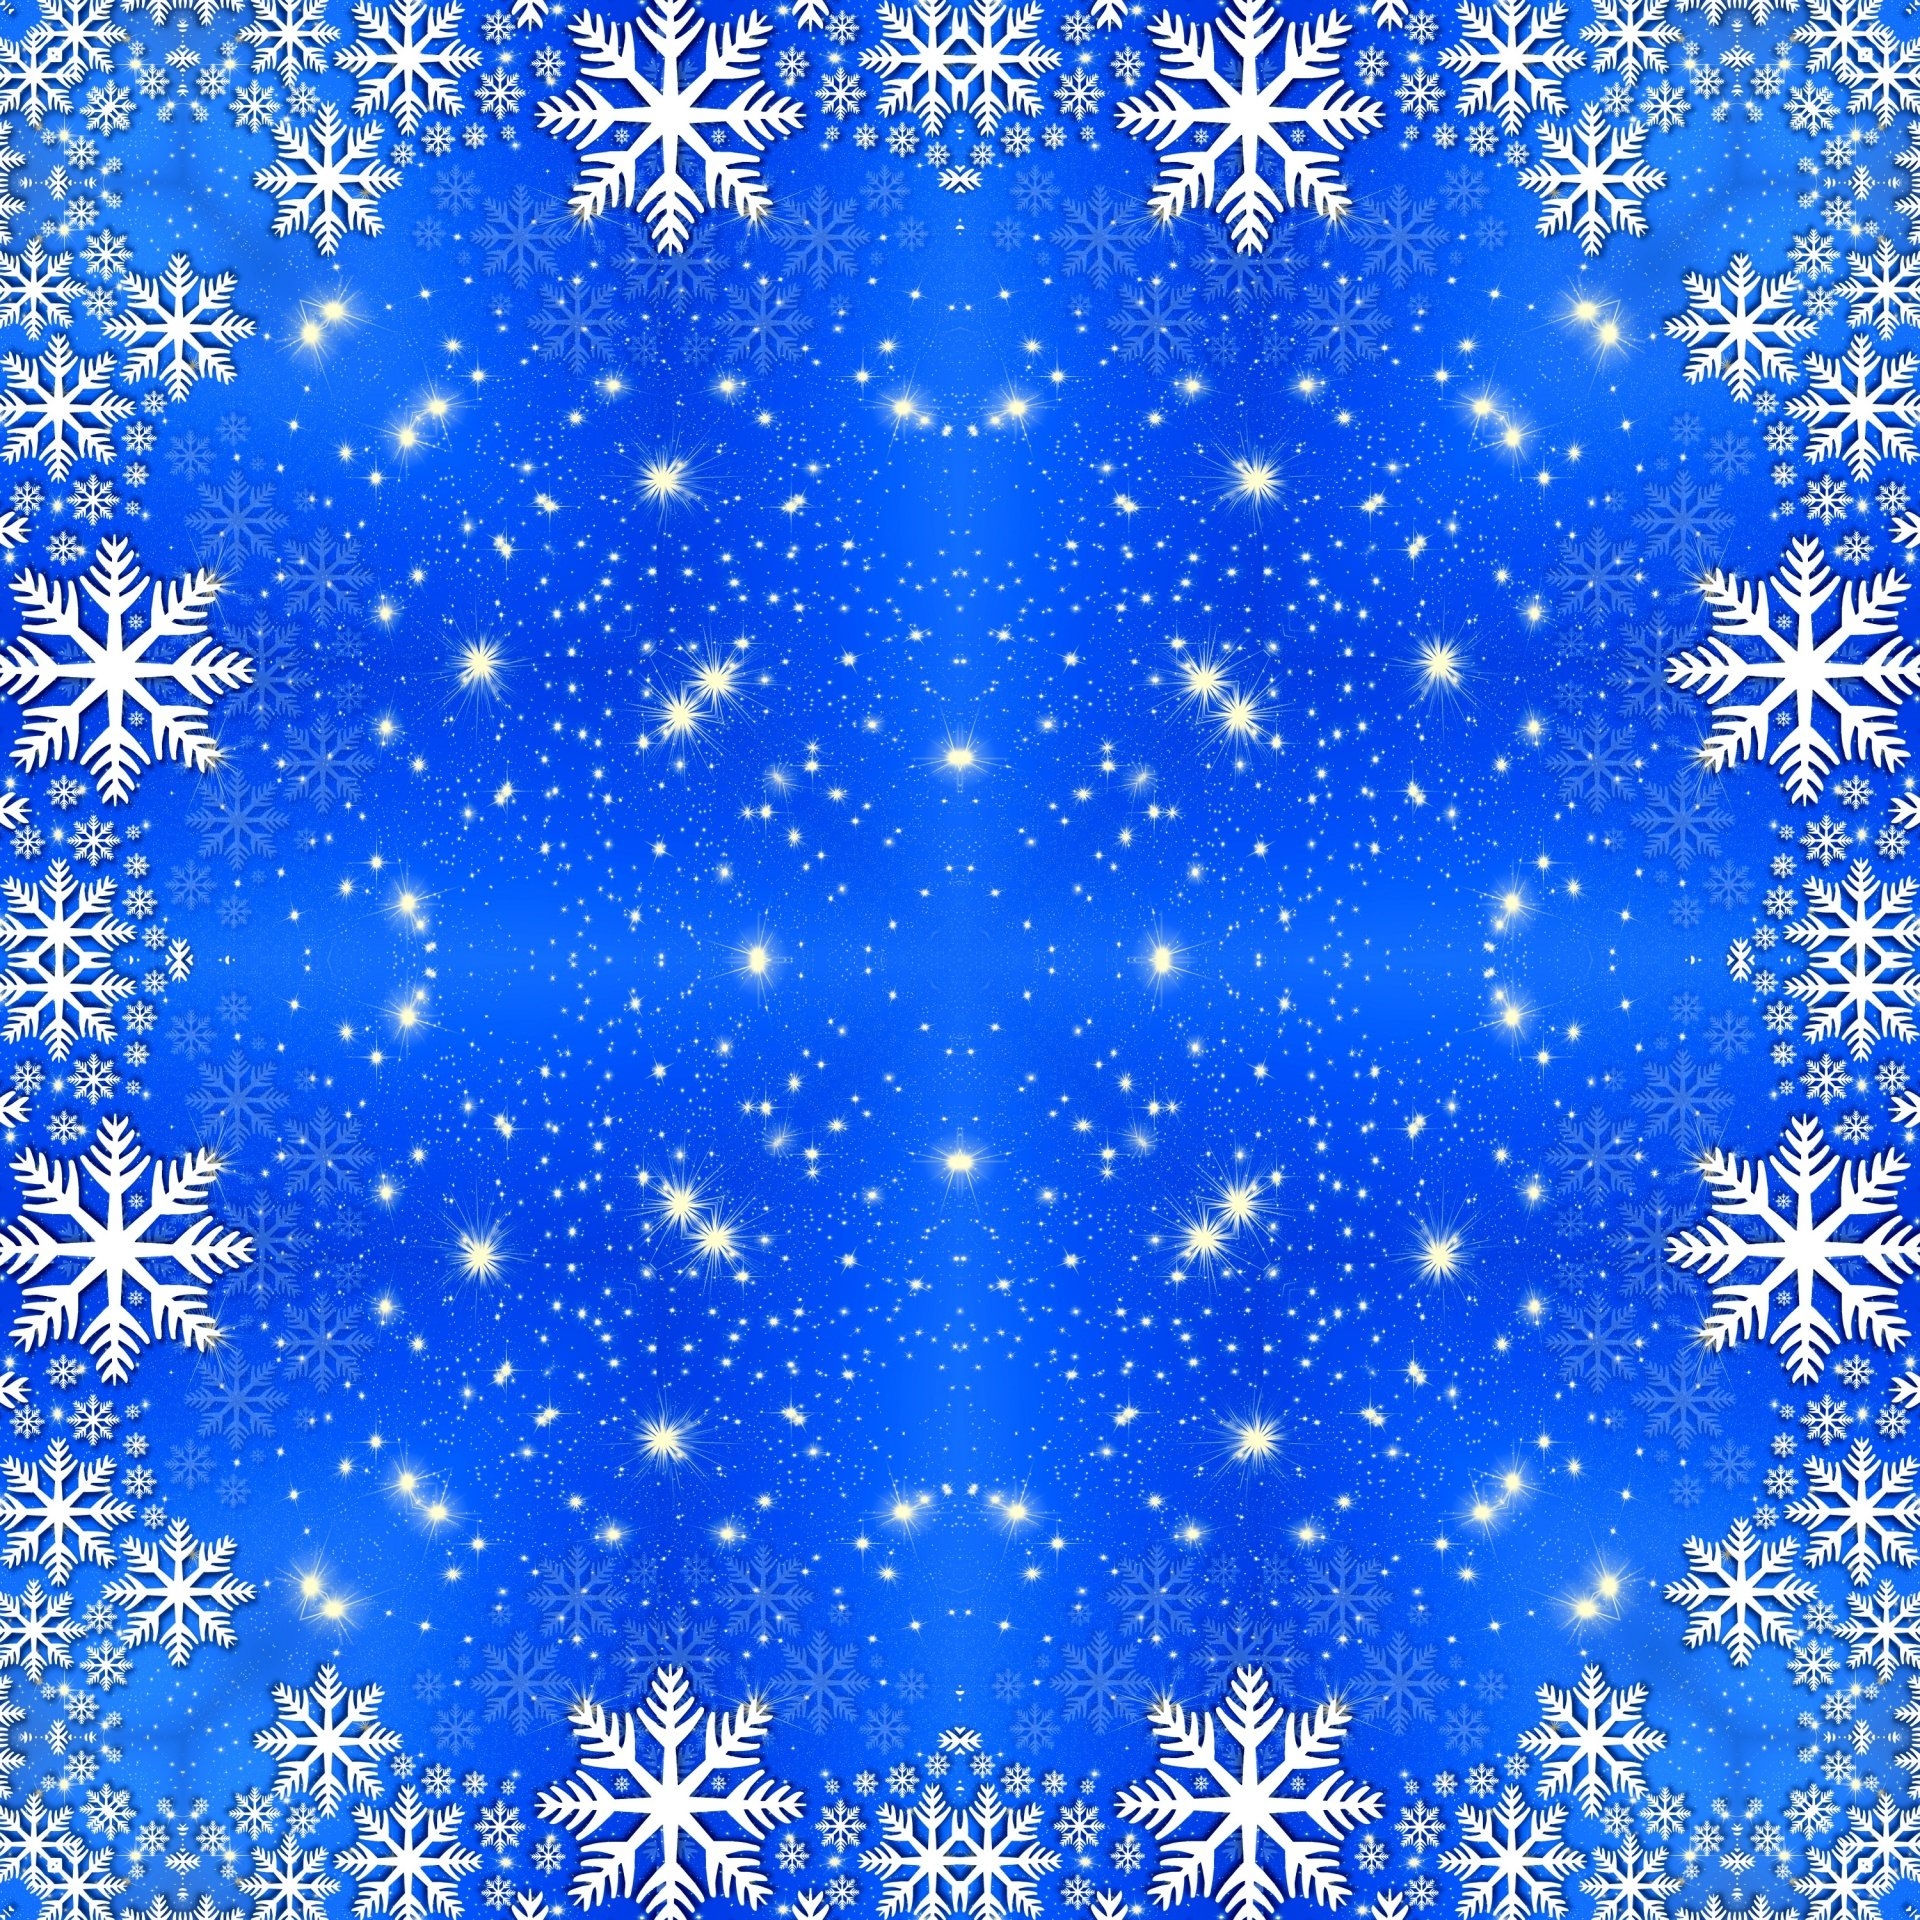 Картинки фон снежинки. Новогодний фон снежинки. Голубой фон со снежинками. Синий фон со снежинками. Фон снежинки для фотошопа.